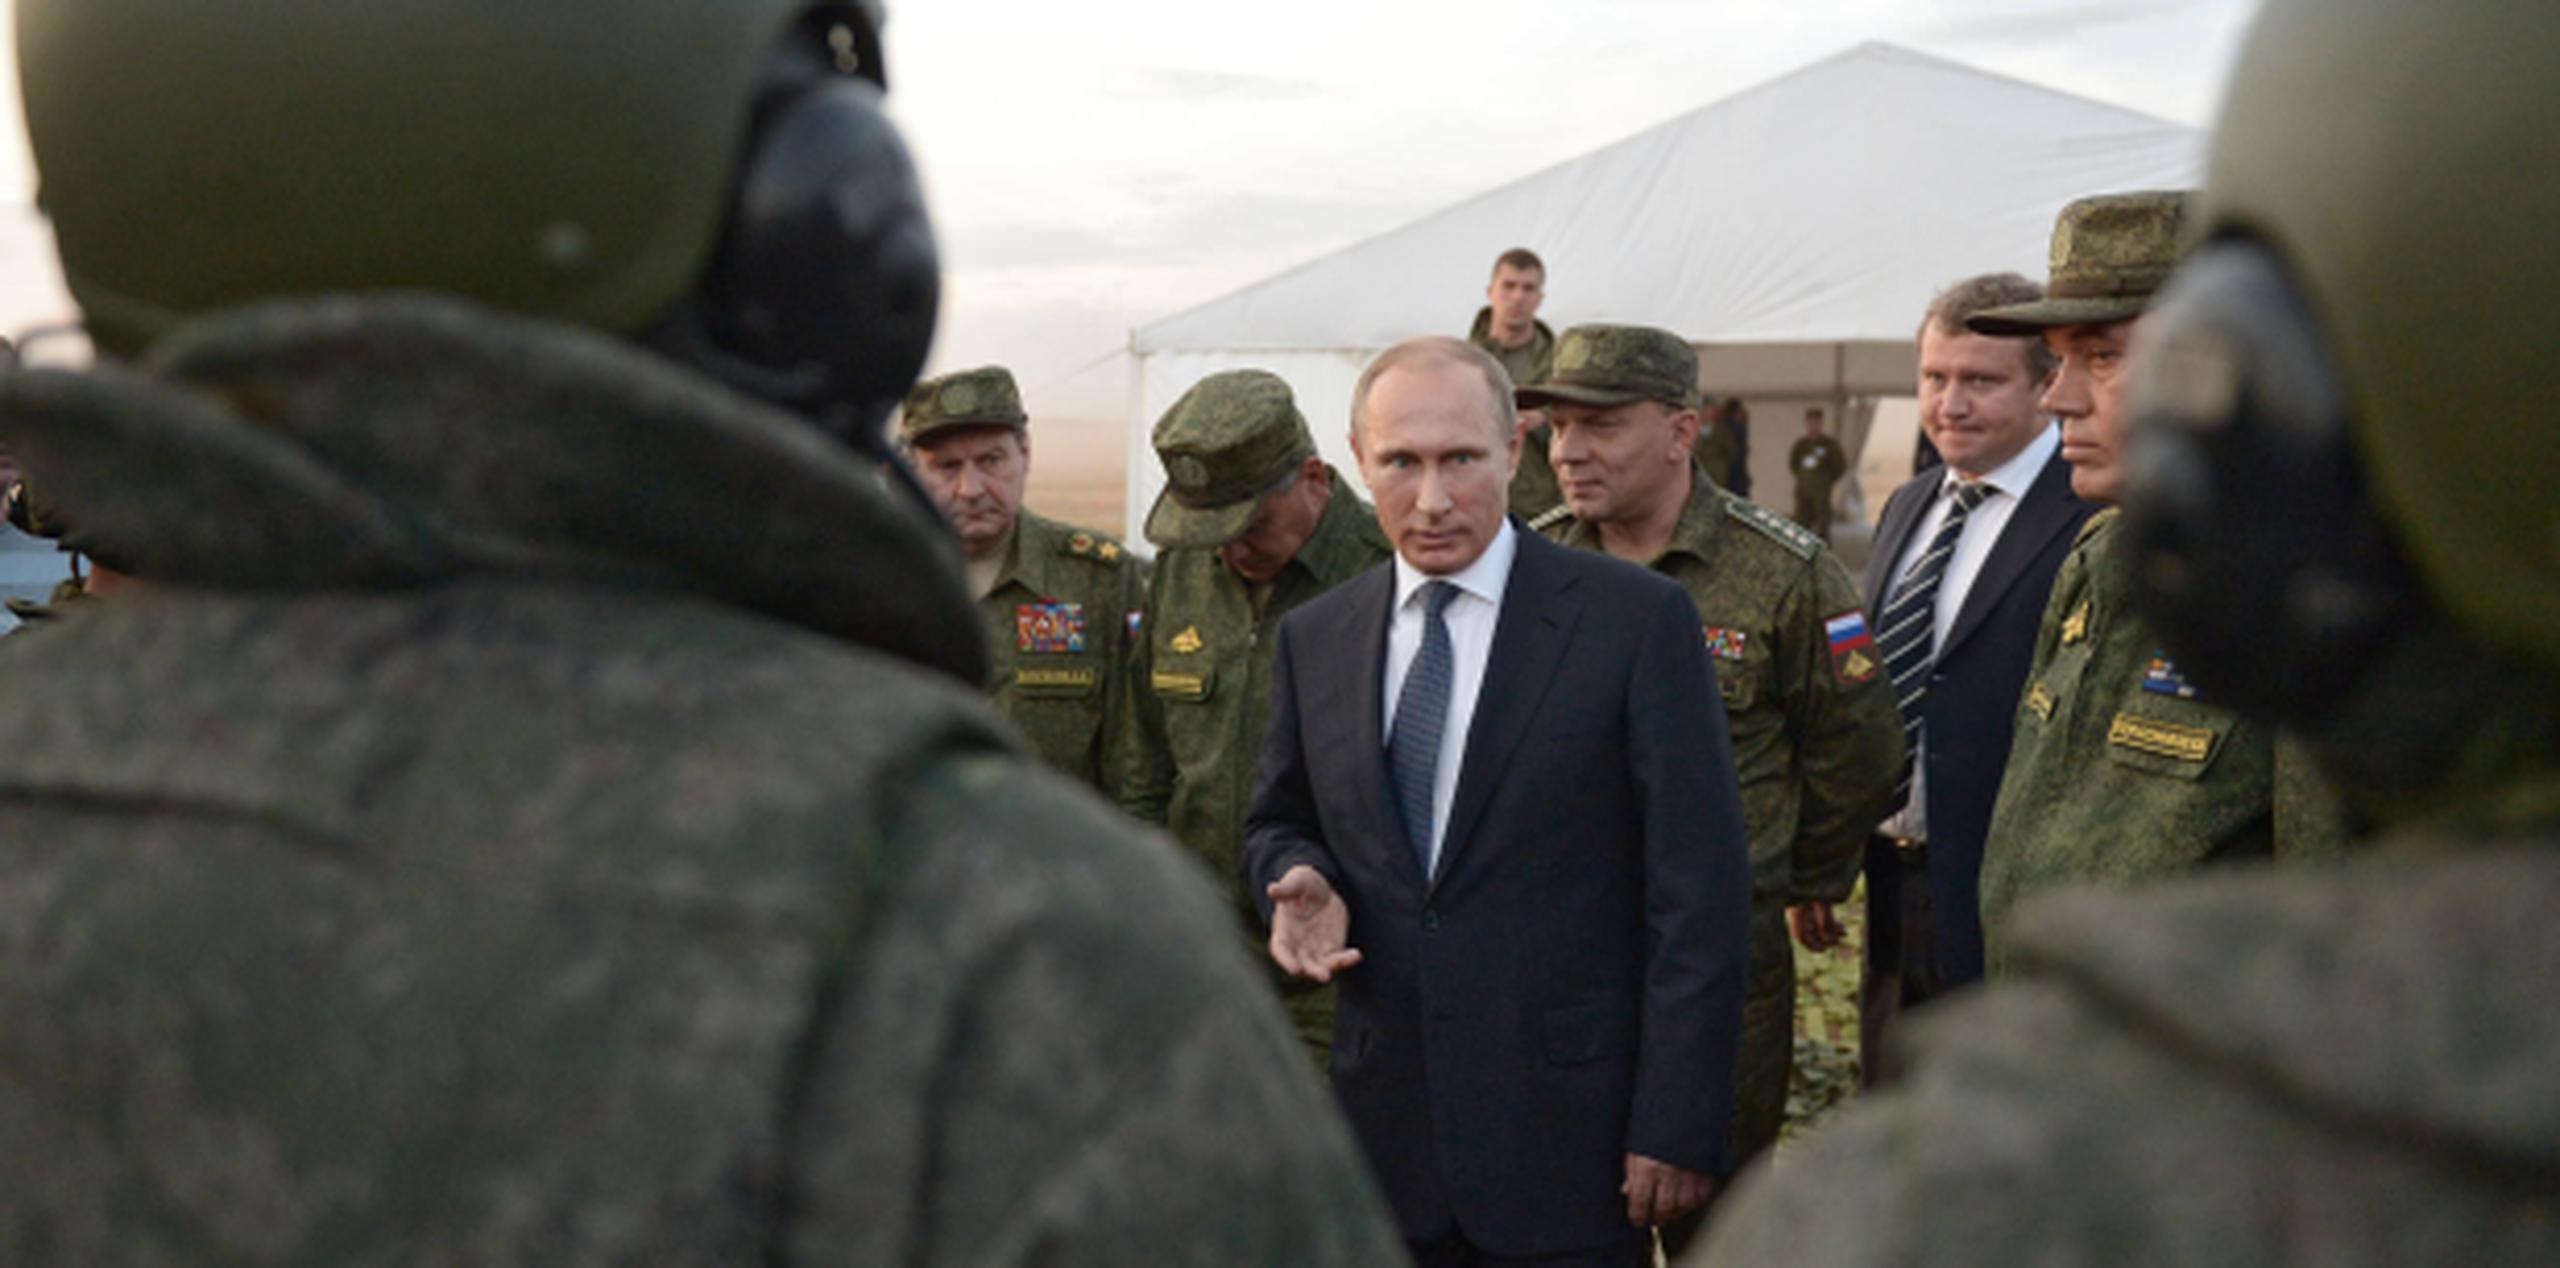 El gobierno de Vladimir Putin, aquí reunido recientemente con soldados, ha mostrado en las últimas semanas su determinación de apoyar al régimen de Bachar al Asad en su lucha contra Estado Islámico. (AP)